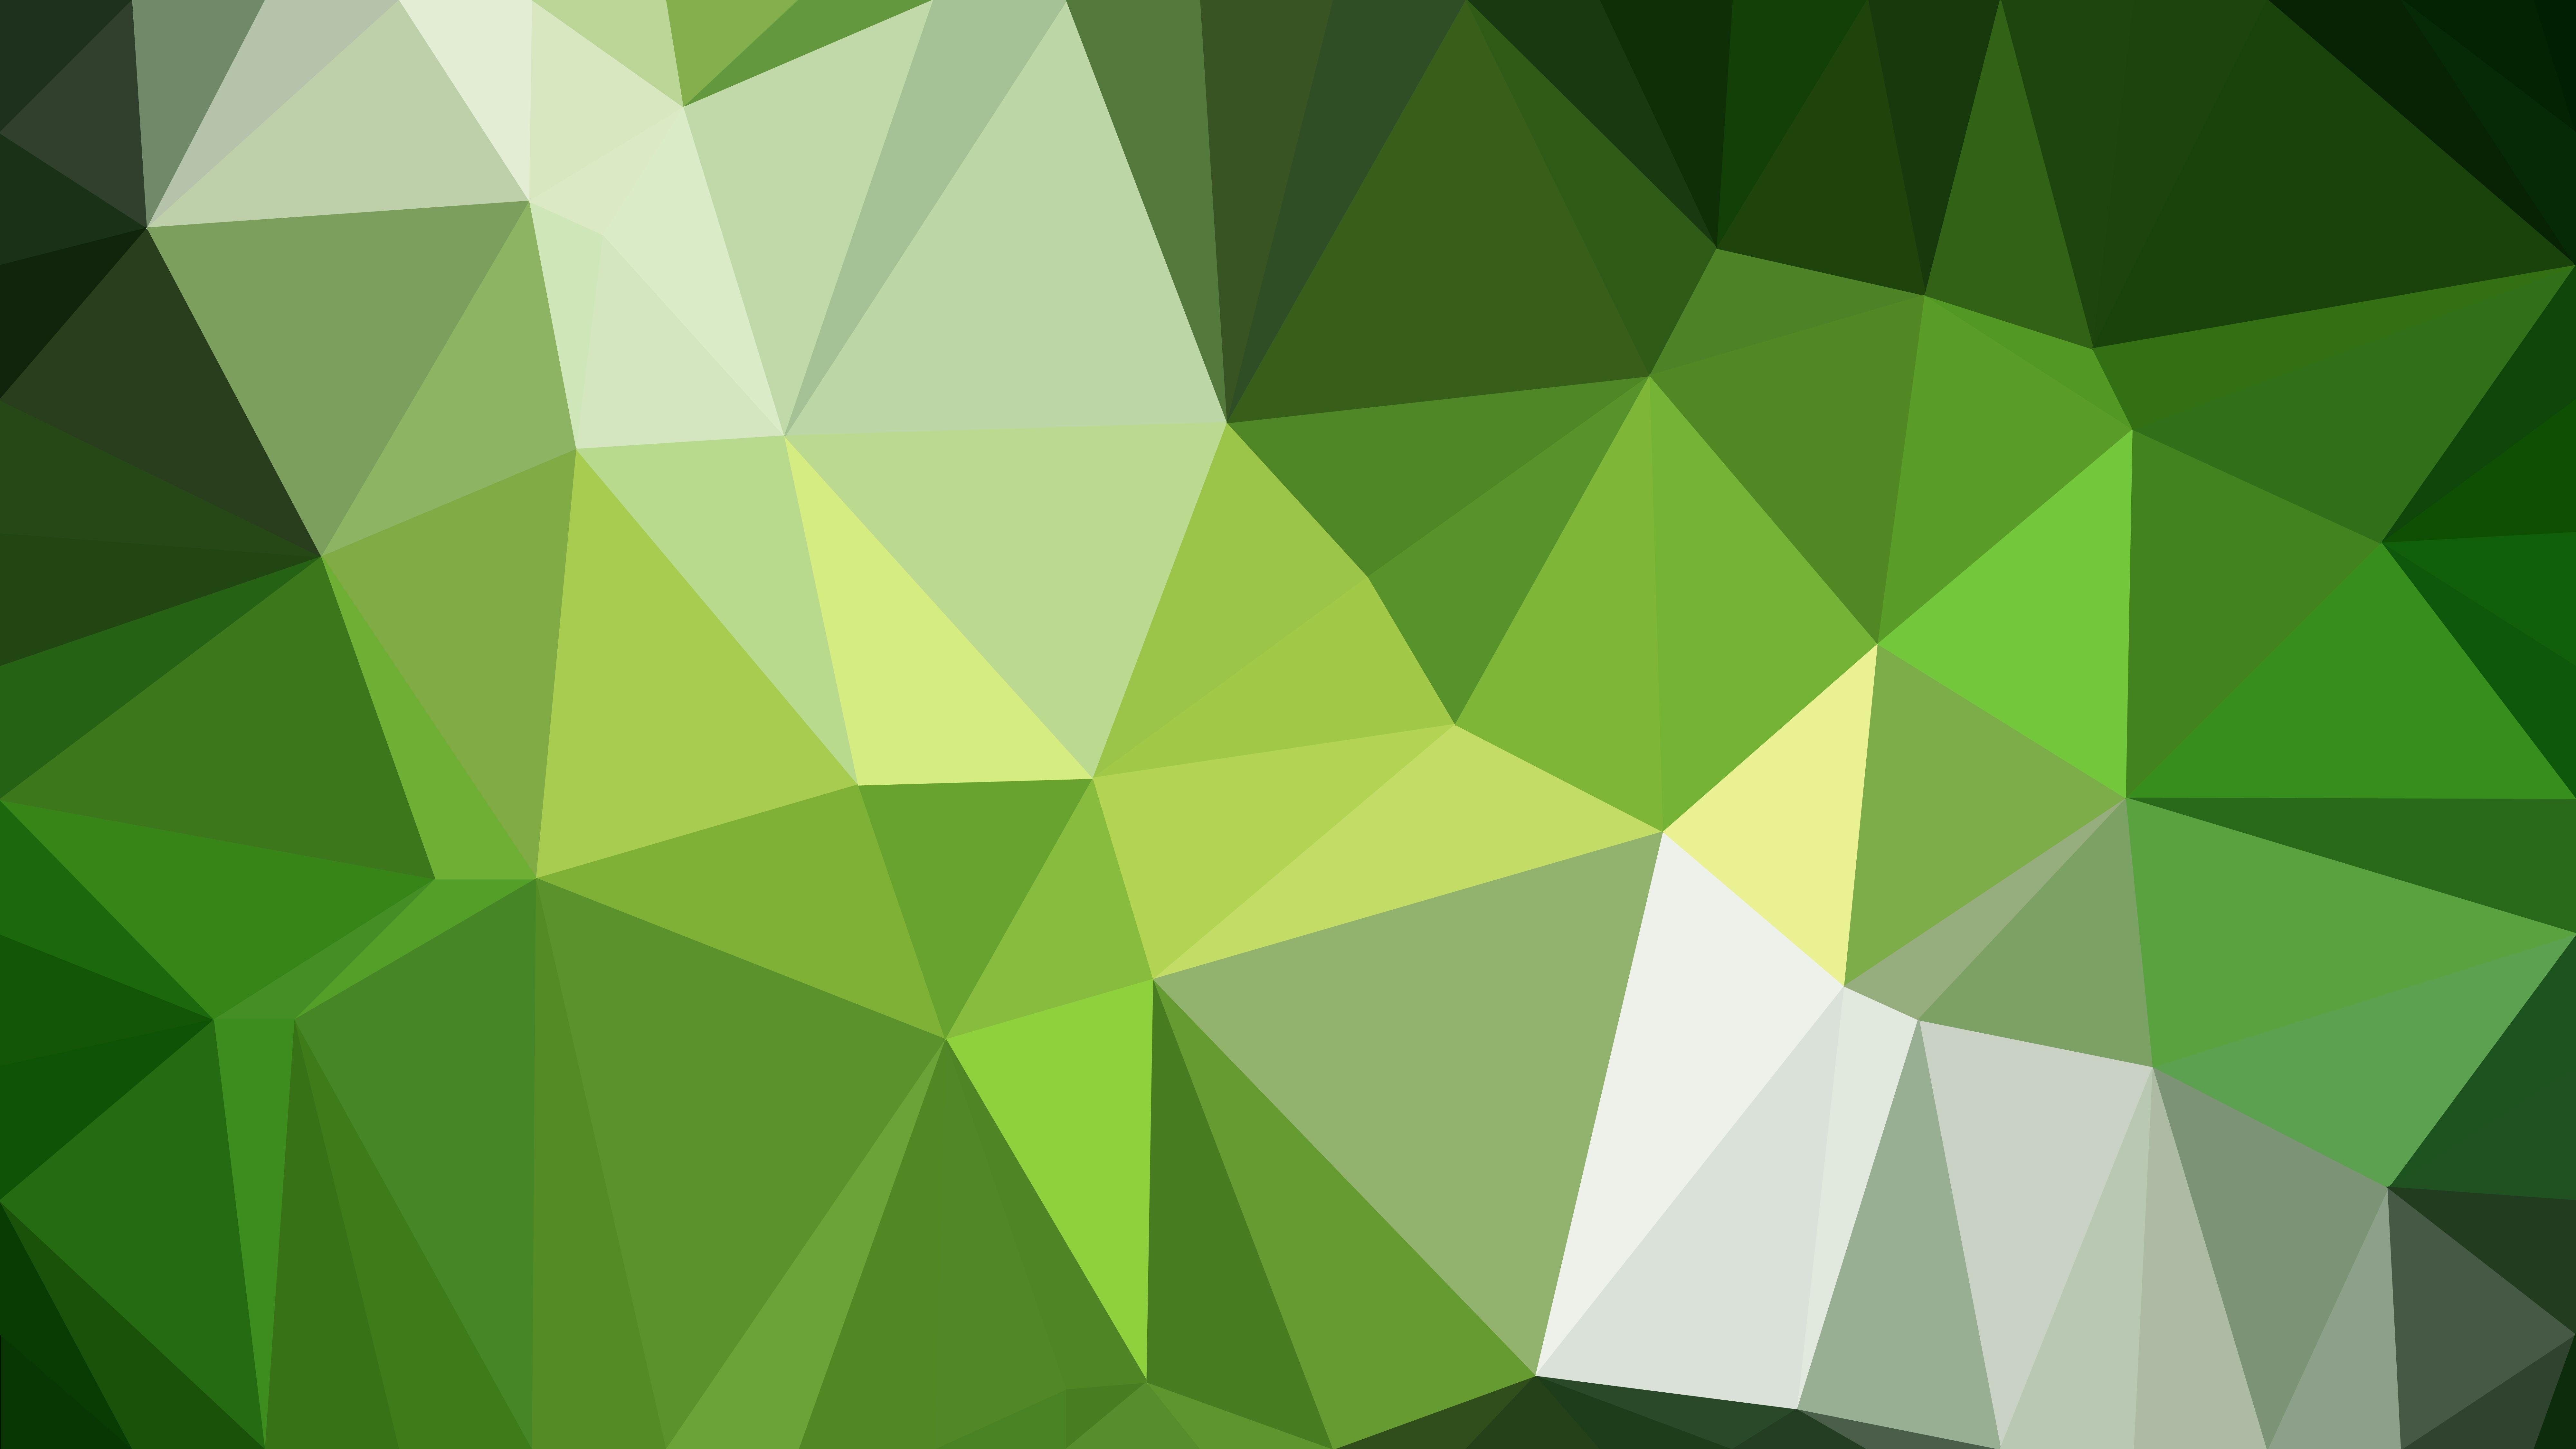 Đồ họa vector nền trừu tượng đa giác màu xanh lá cây 8000x4500